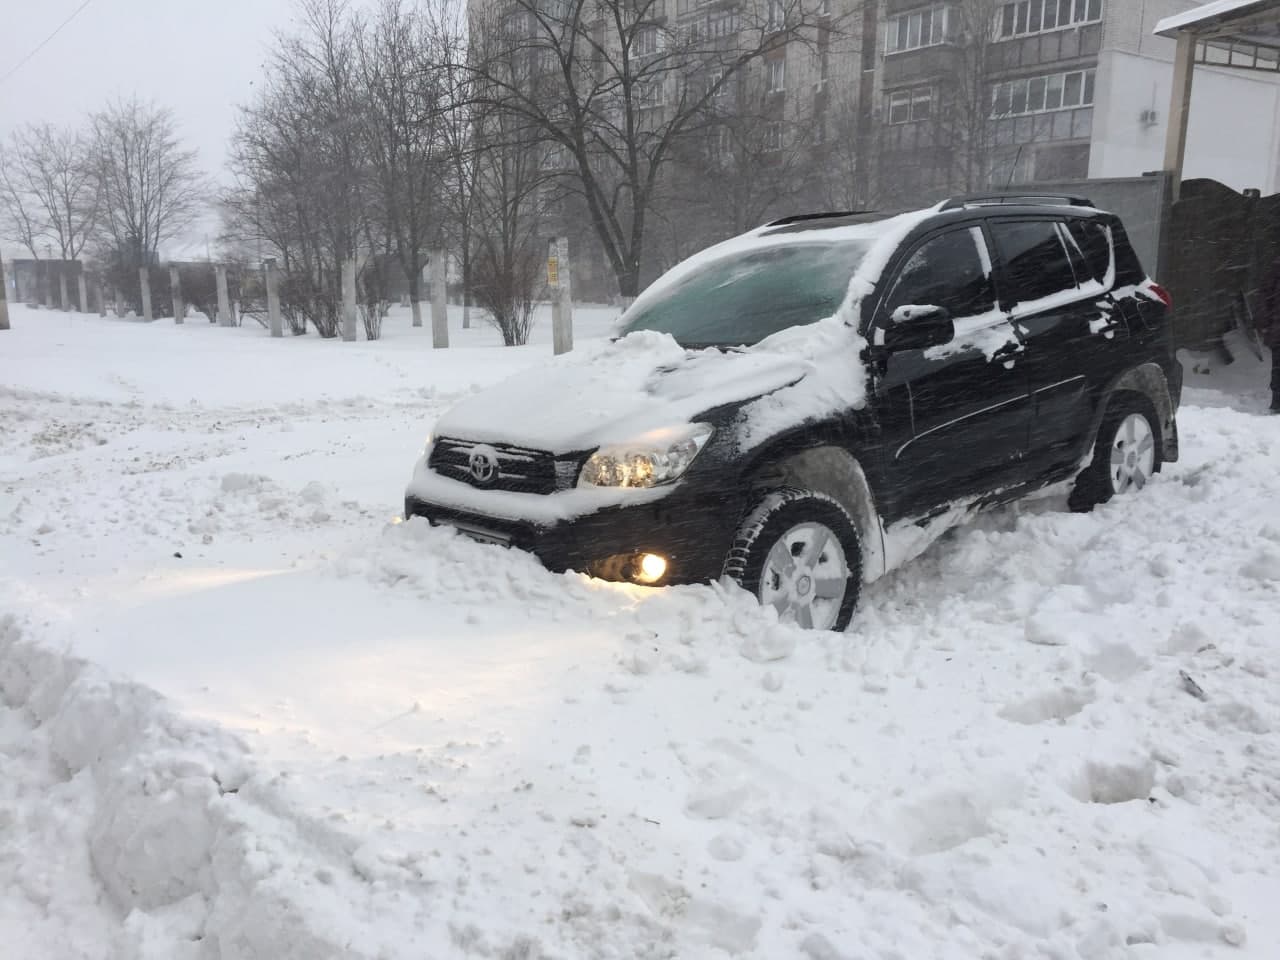 Харьков к снегопаду готов, заявили в горсовете